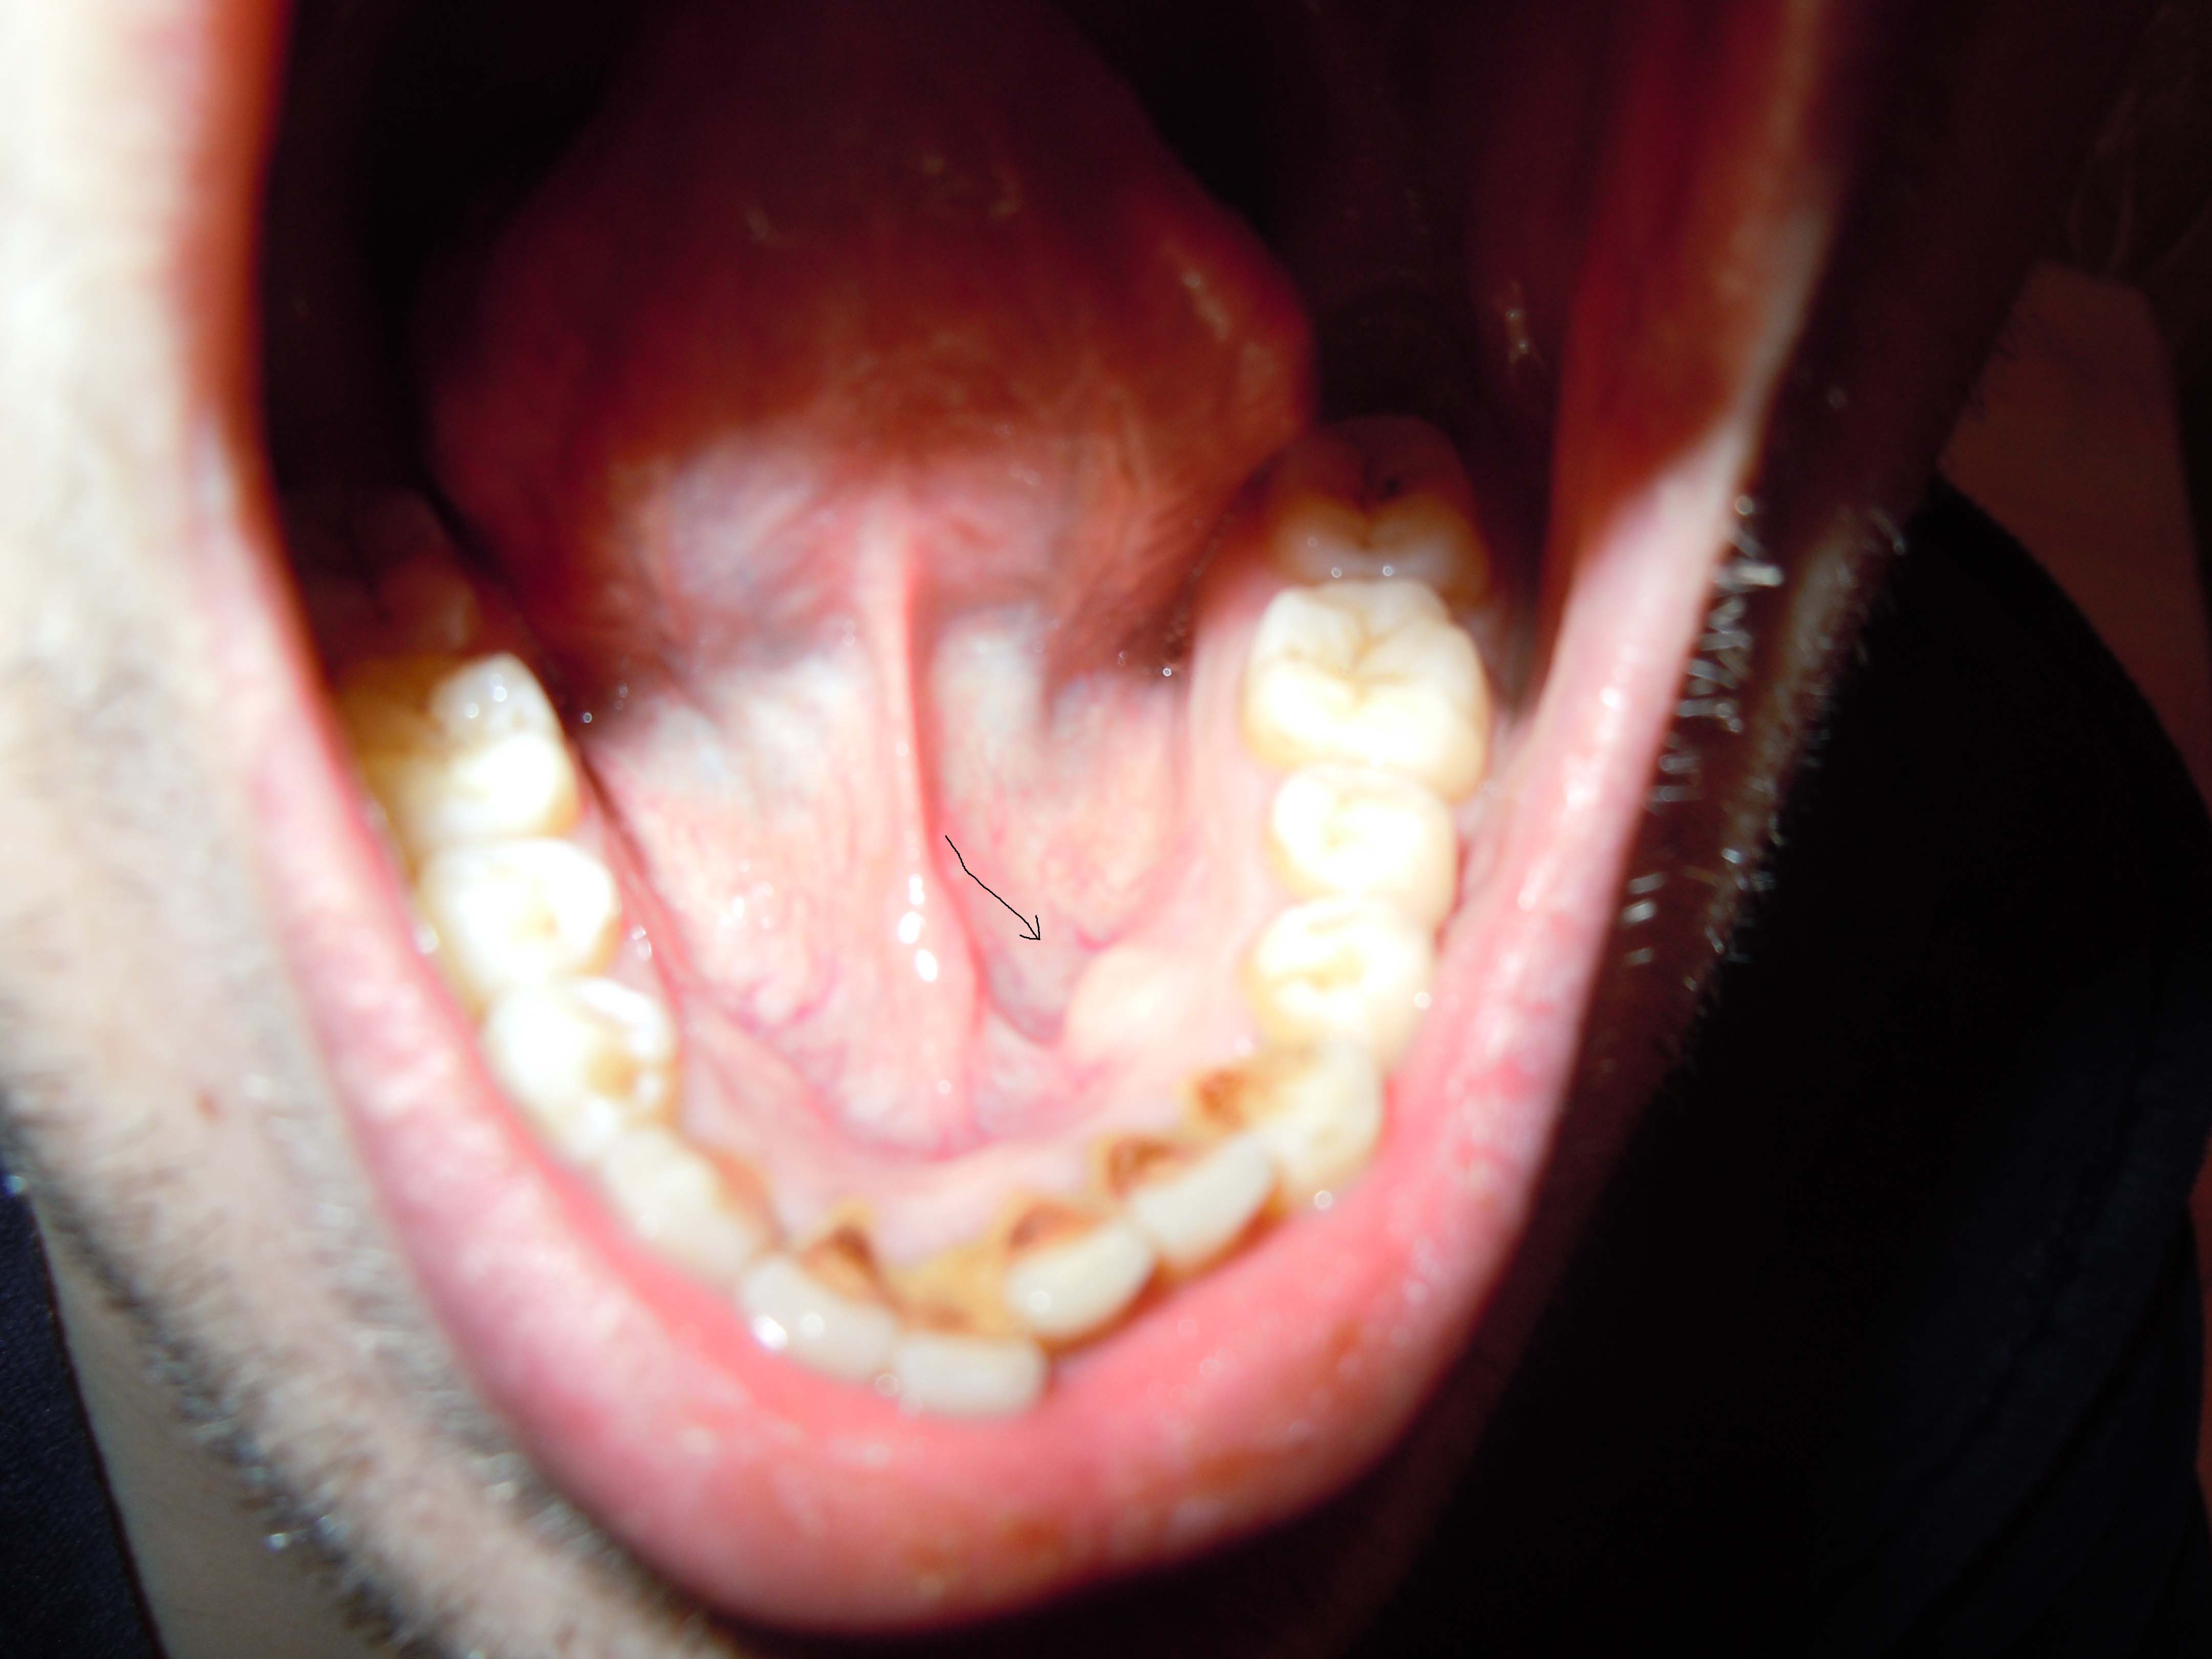 Ретенционная киста нижней губы